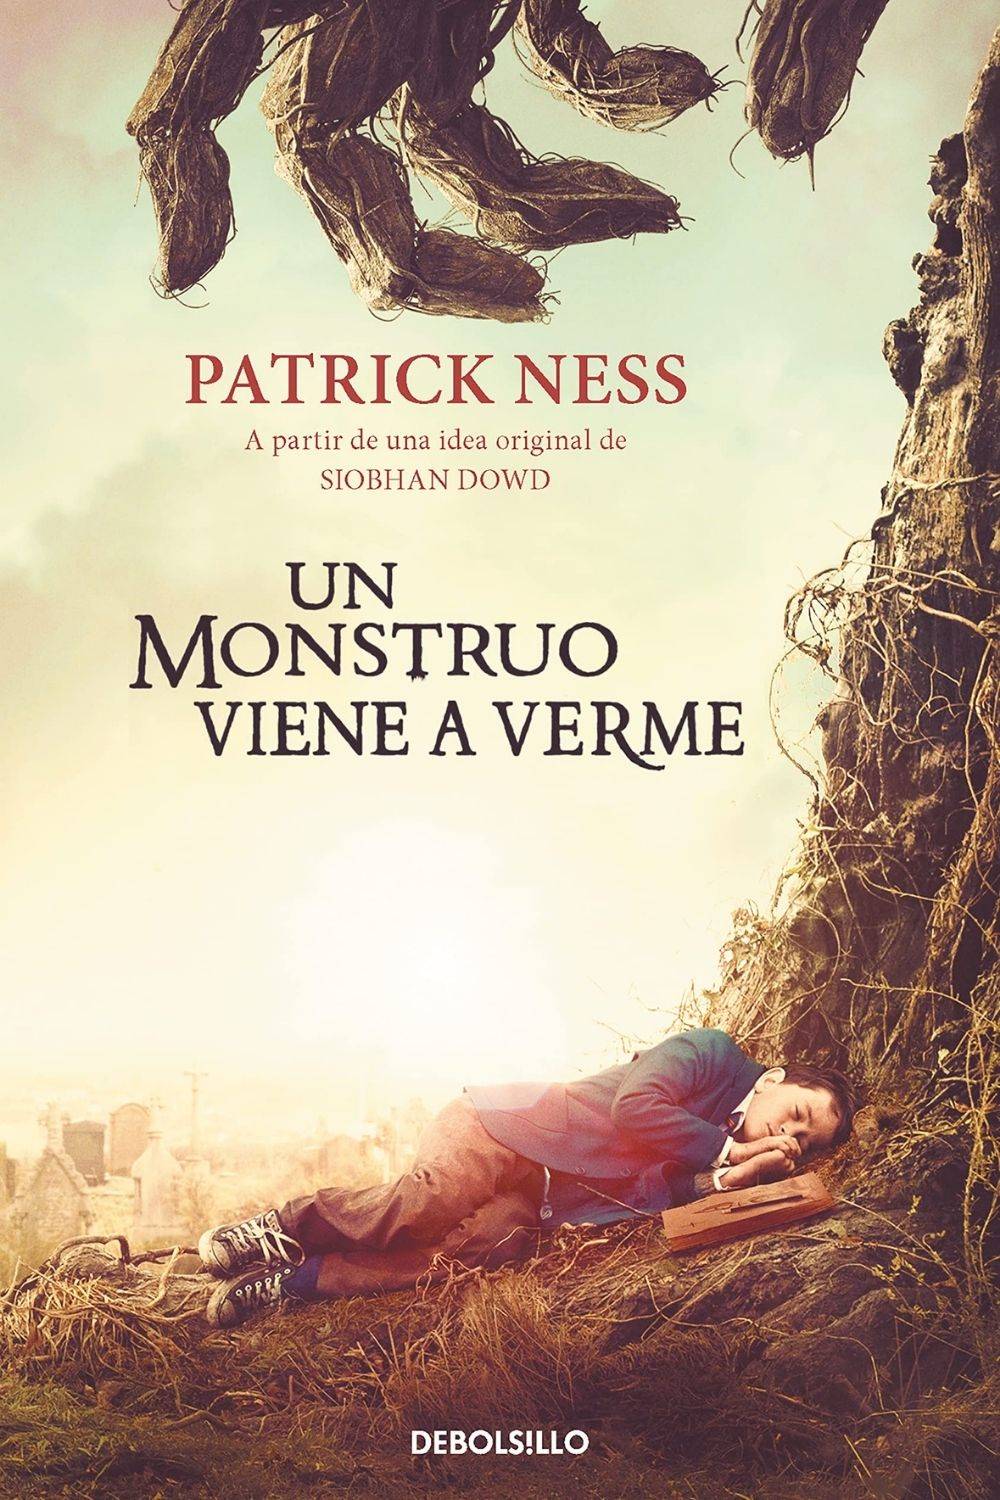 ‘Un monstruo viene a verme’ de Patrick Ness